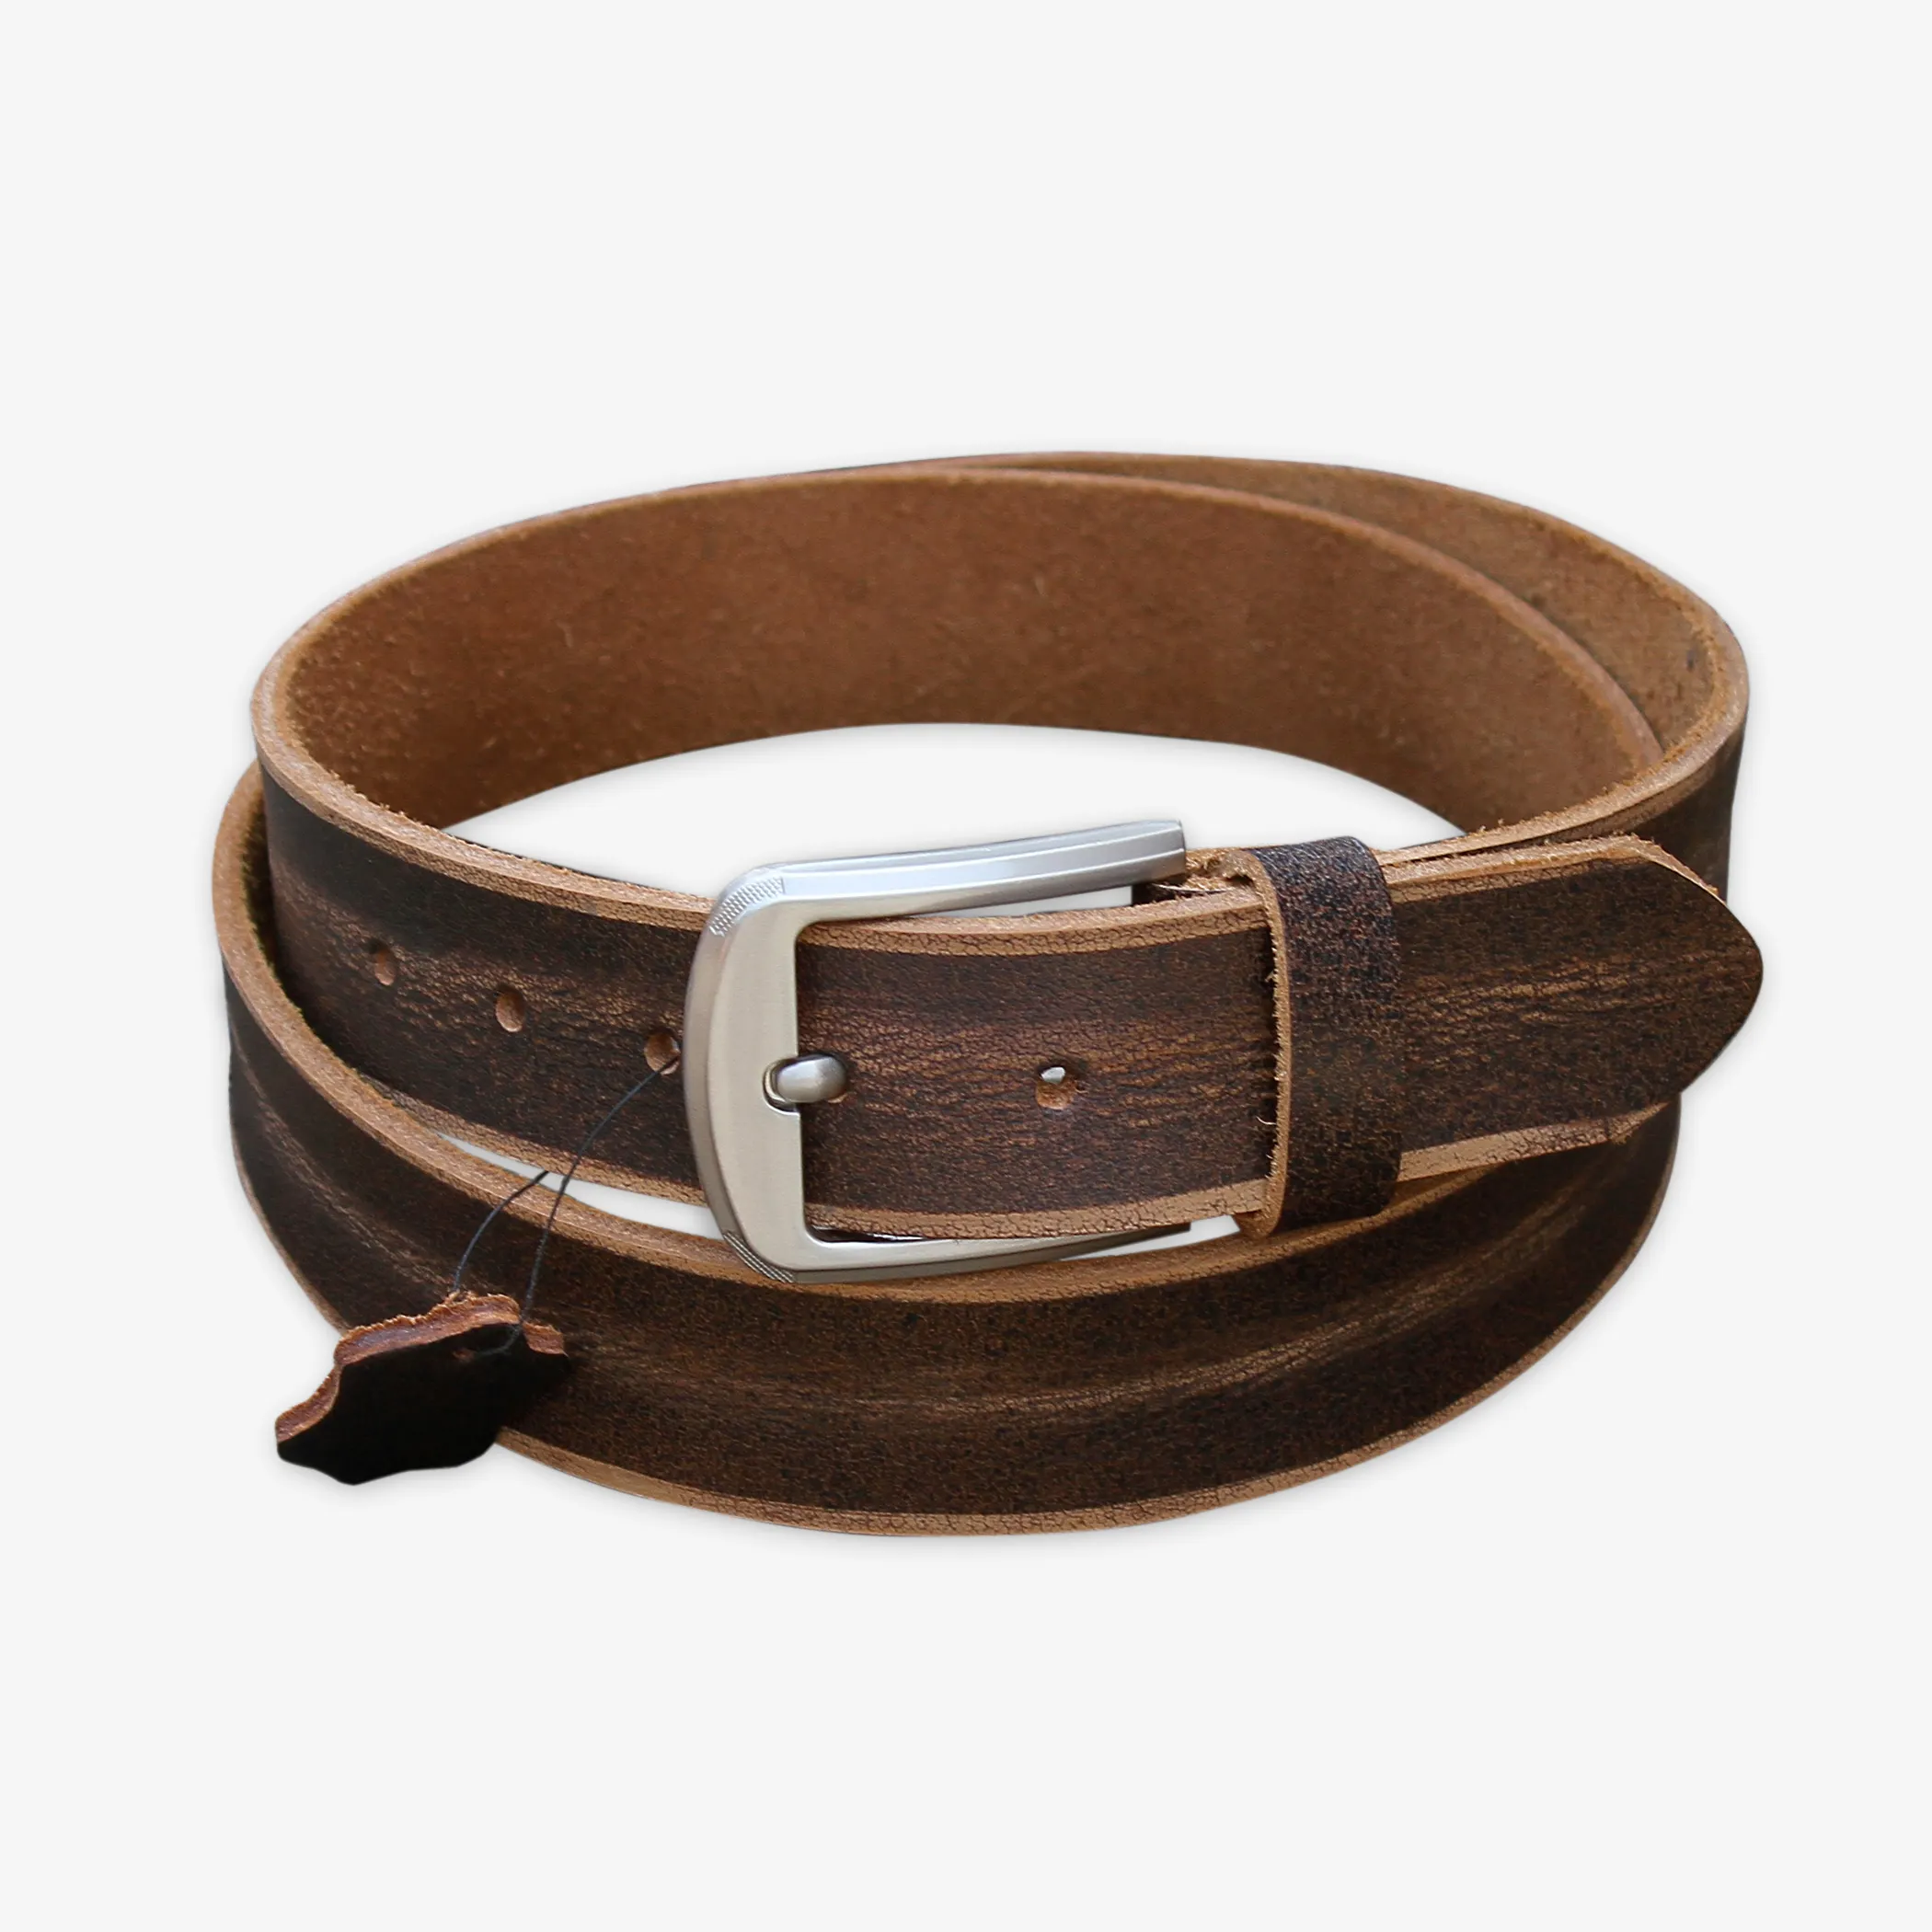 handmade leather belts for men.